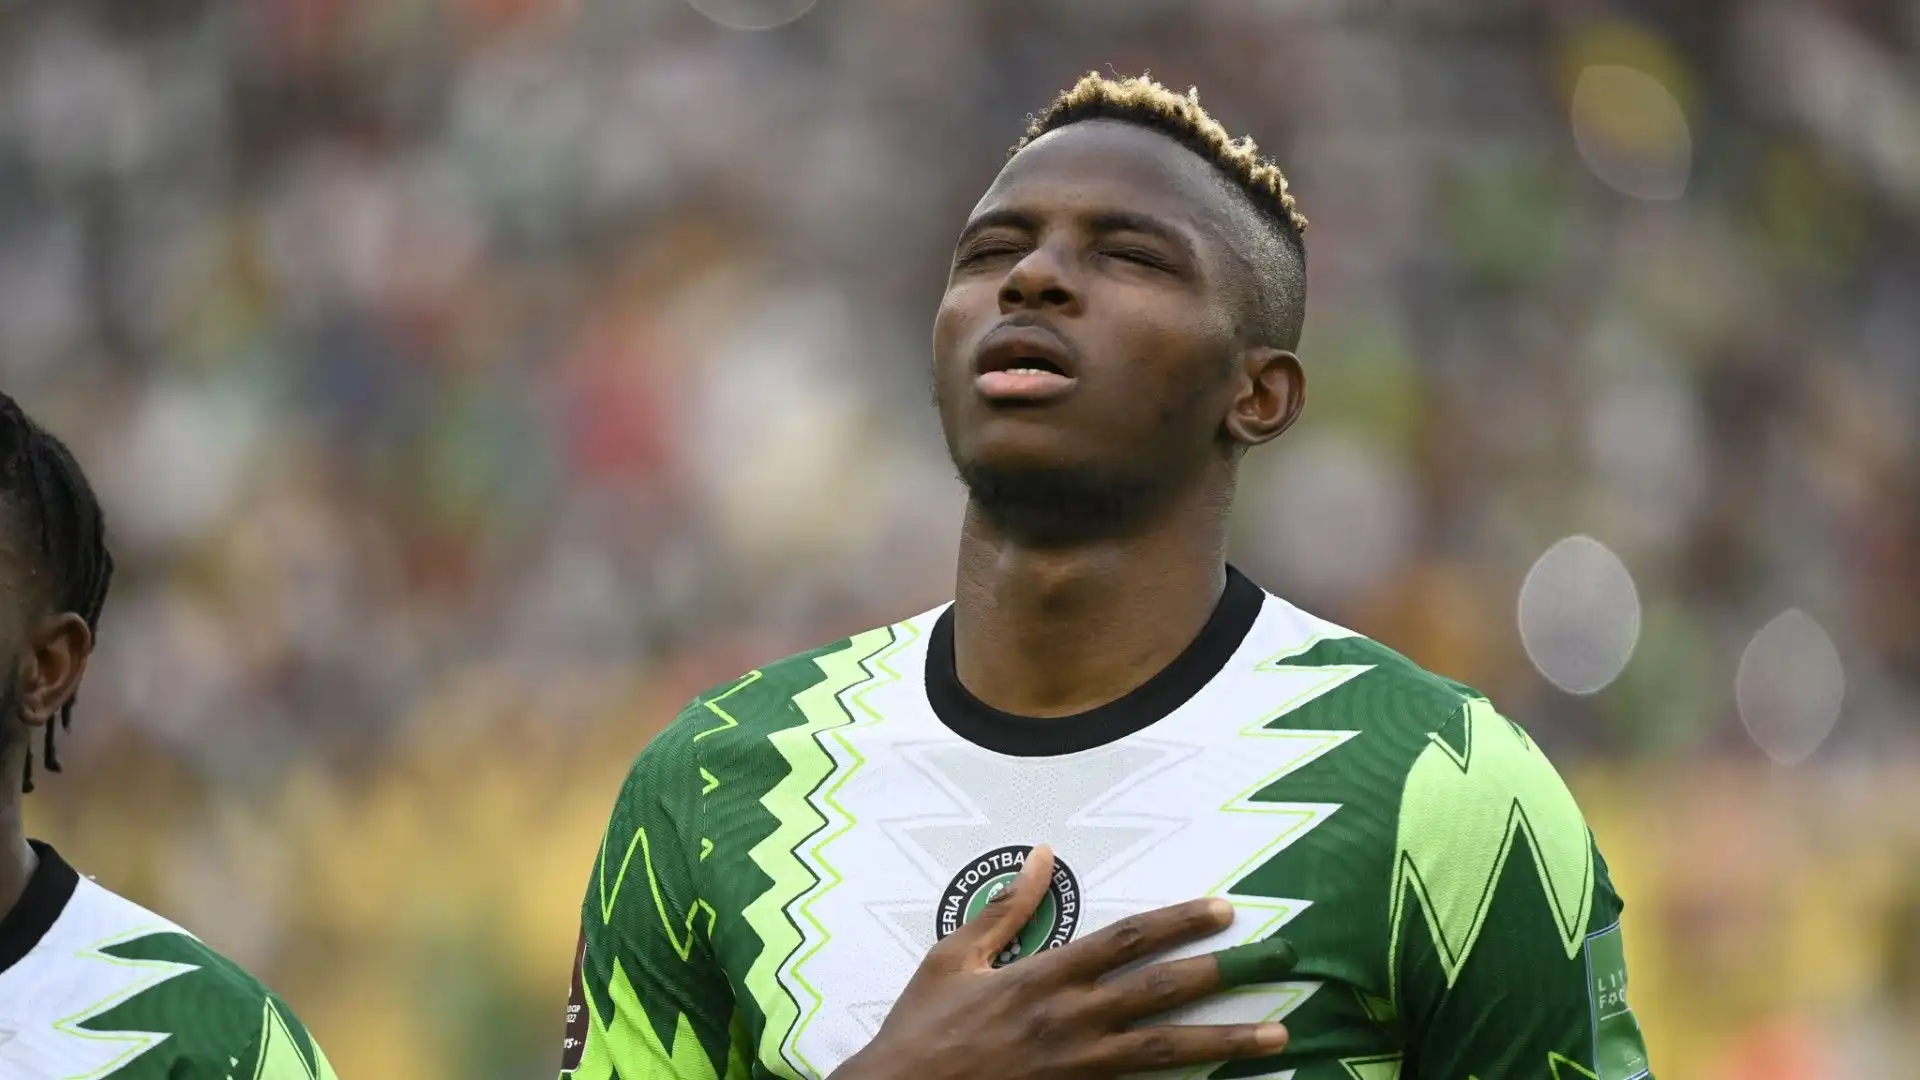 A giugno 2022 ha segnato ben 4 gol nella vittoria della Nigeria contro il São Tomé e Príncipe